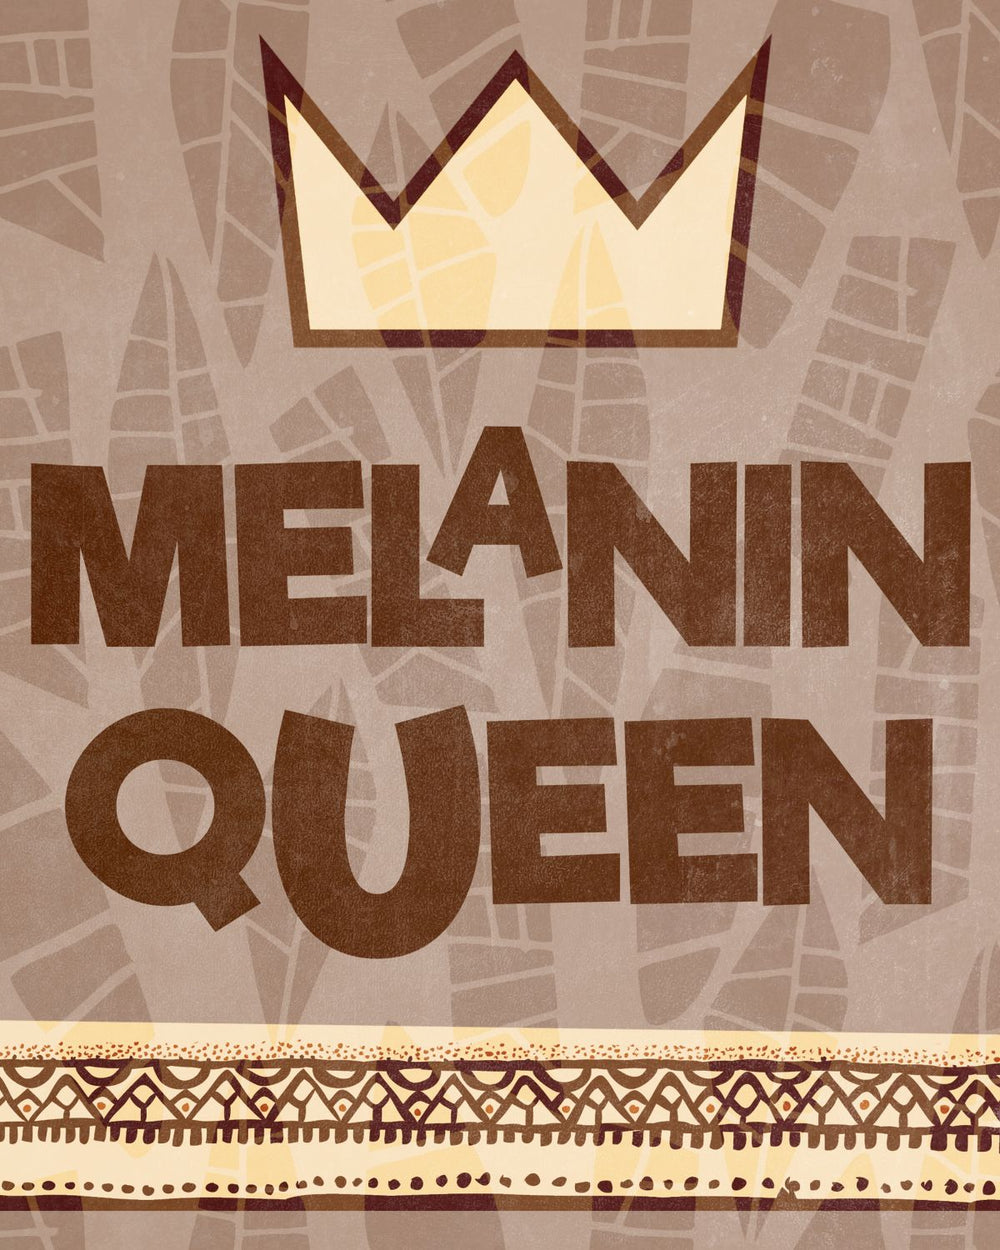 Melanin Queen